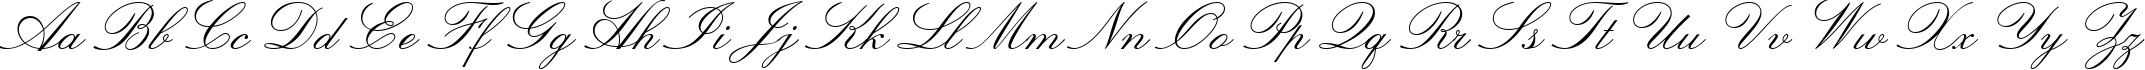 Пример написания английского алфавита шрифтом Lucia BT